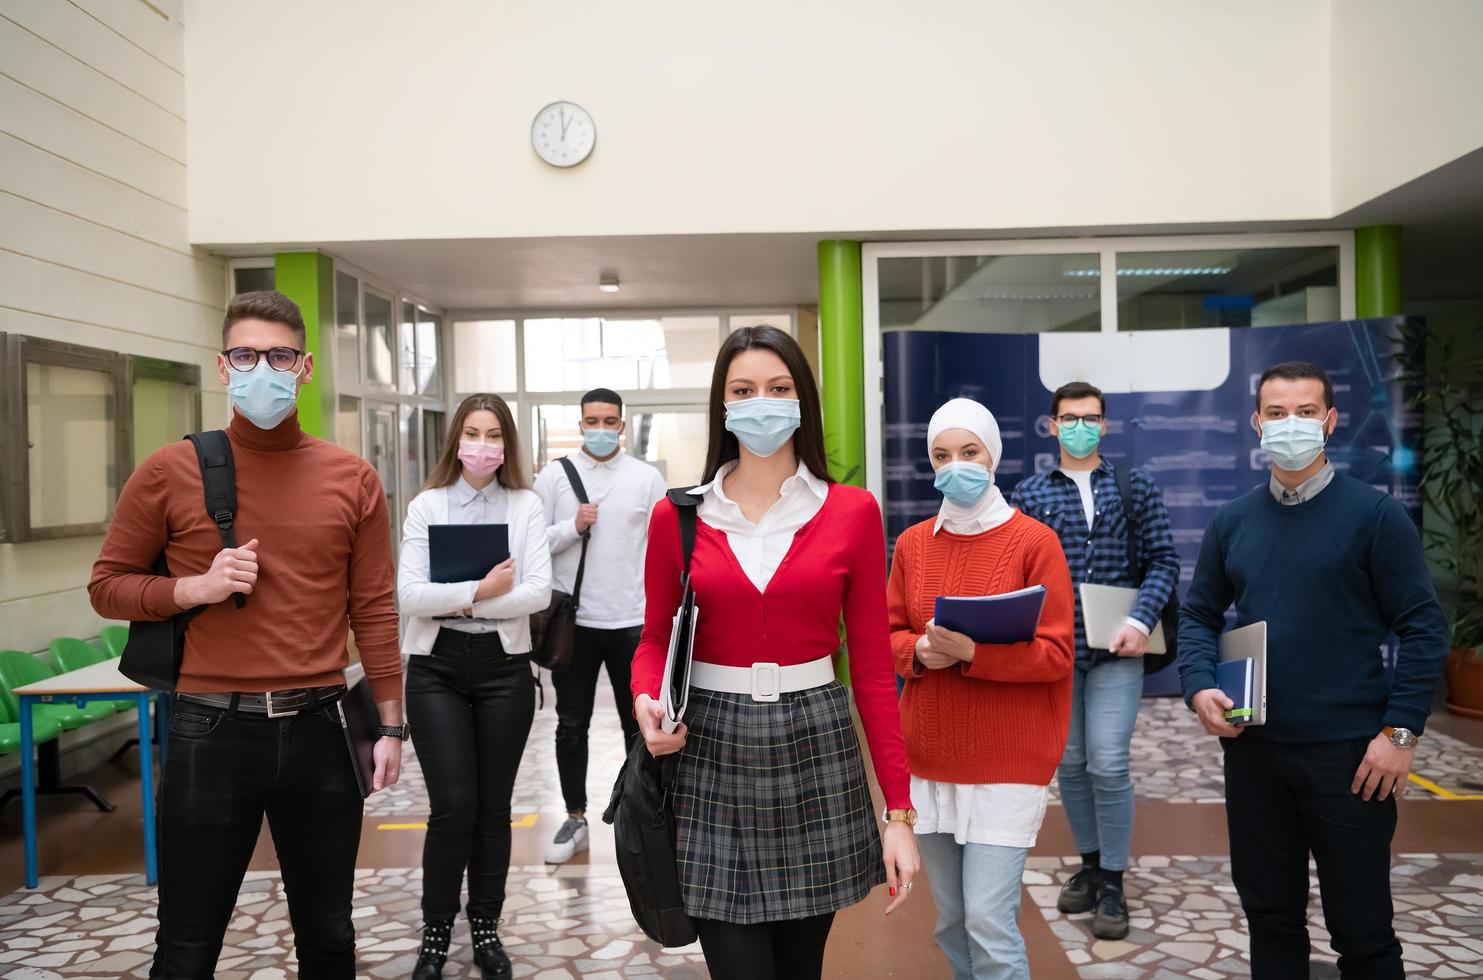 groupe d'étudiants à l'université marchant et portant un masque facial photo